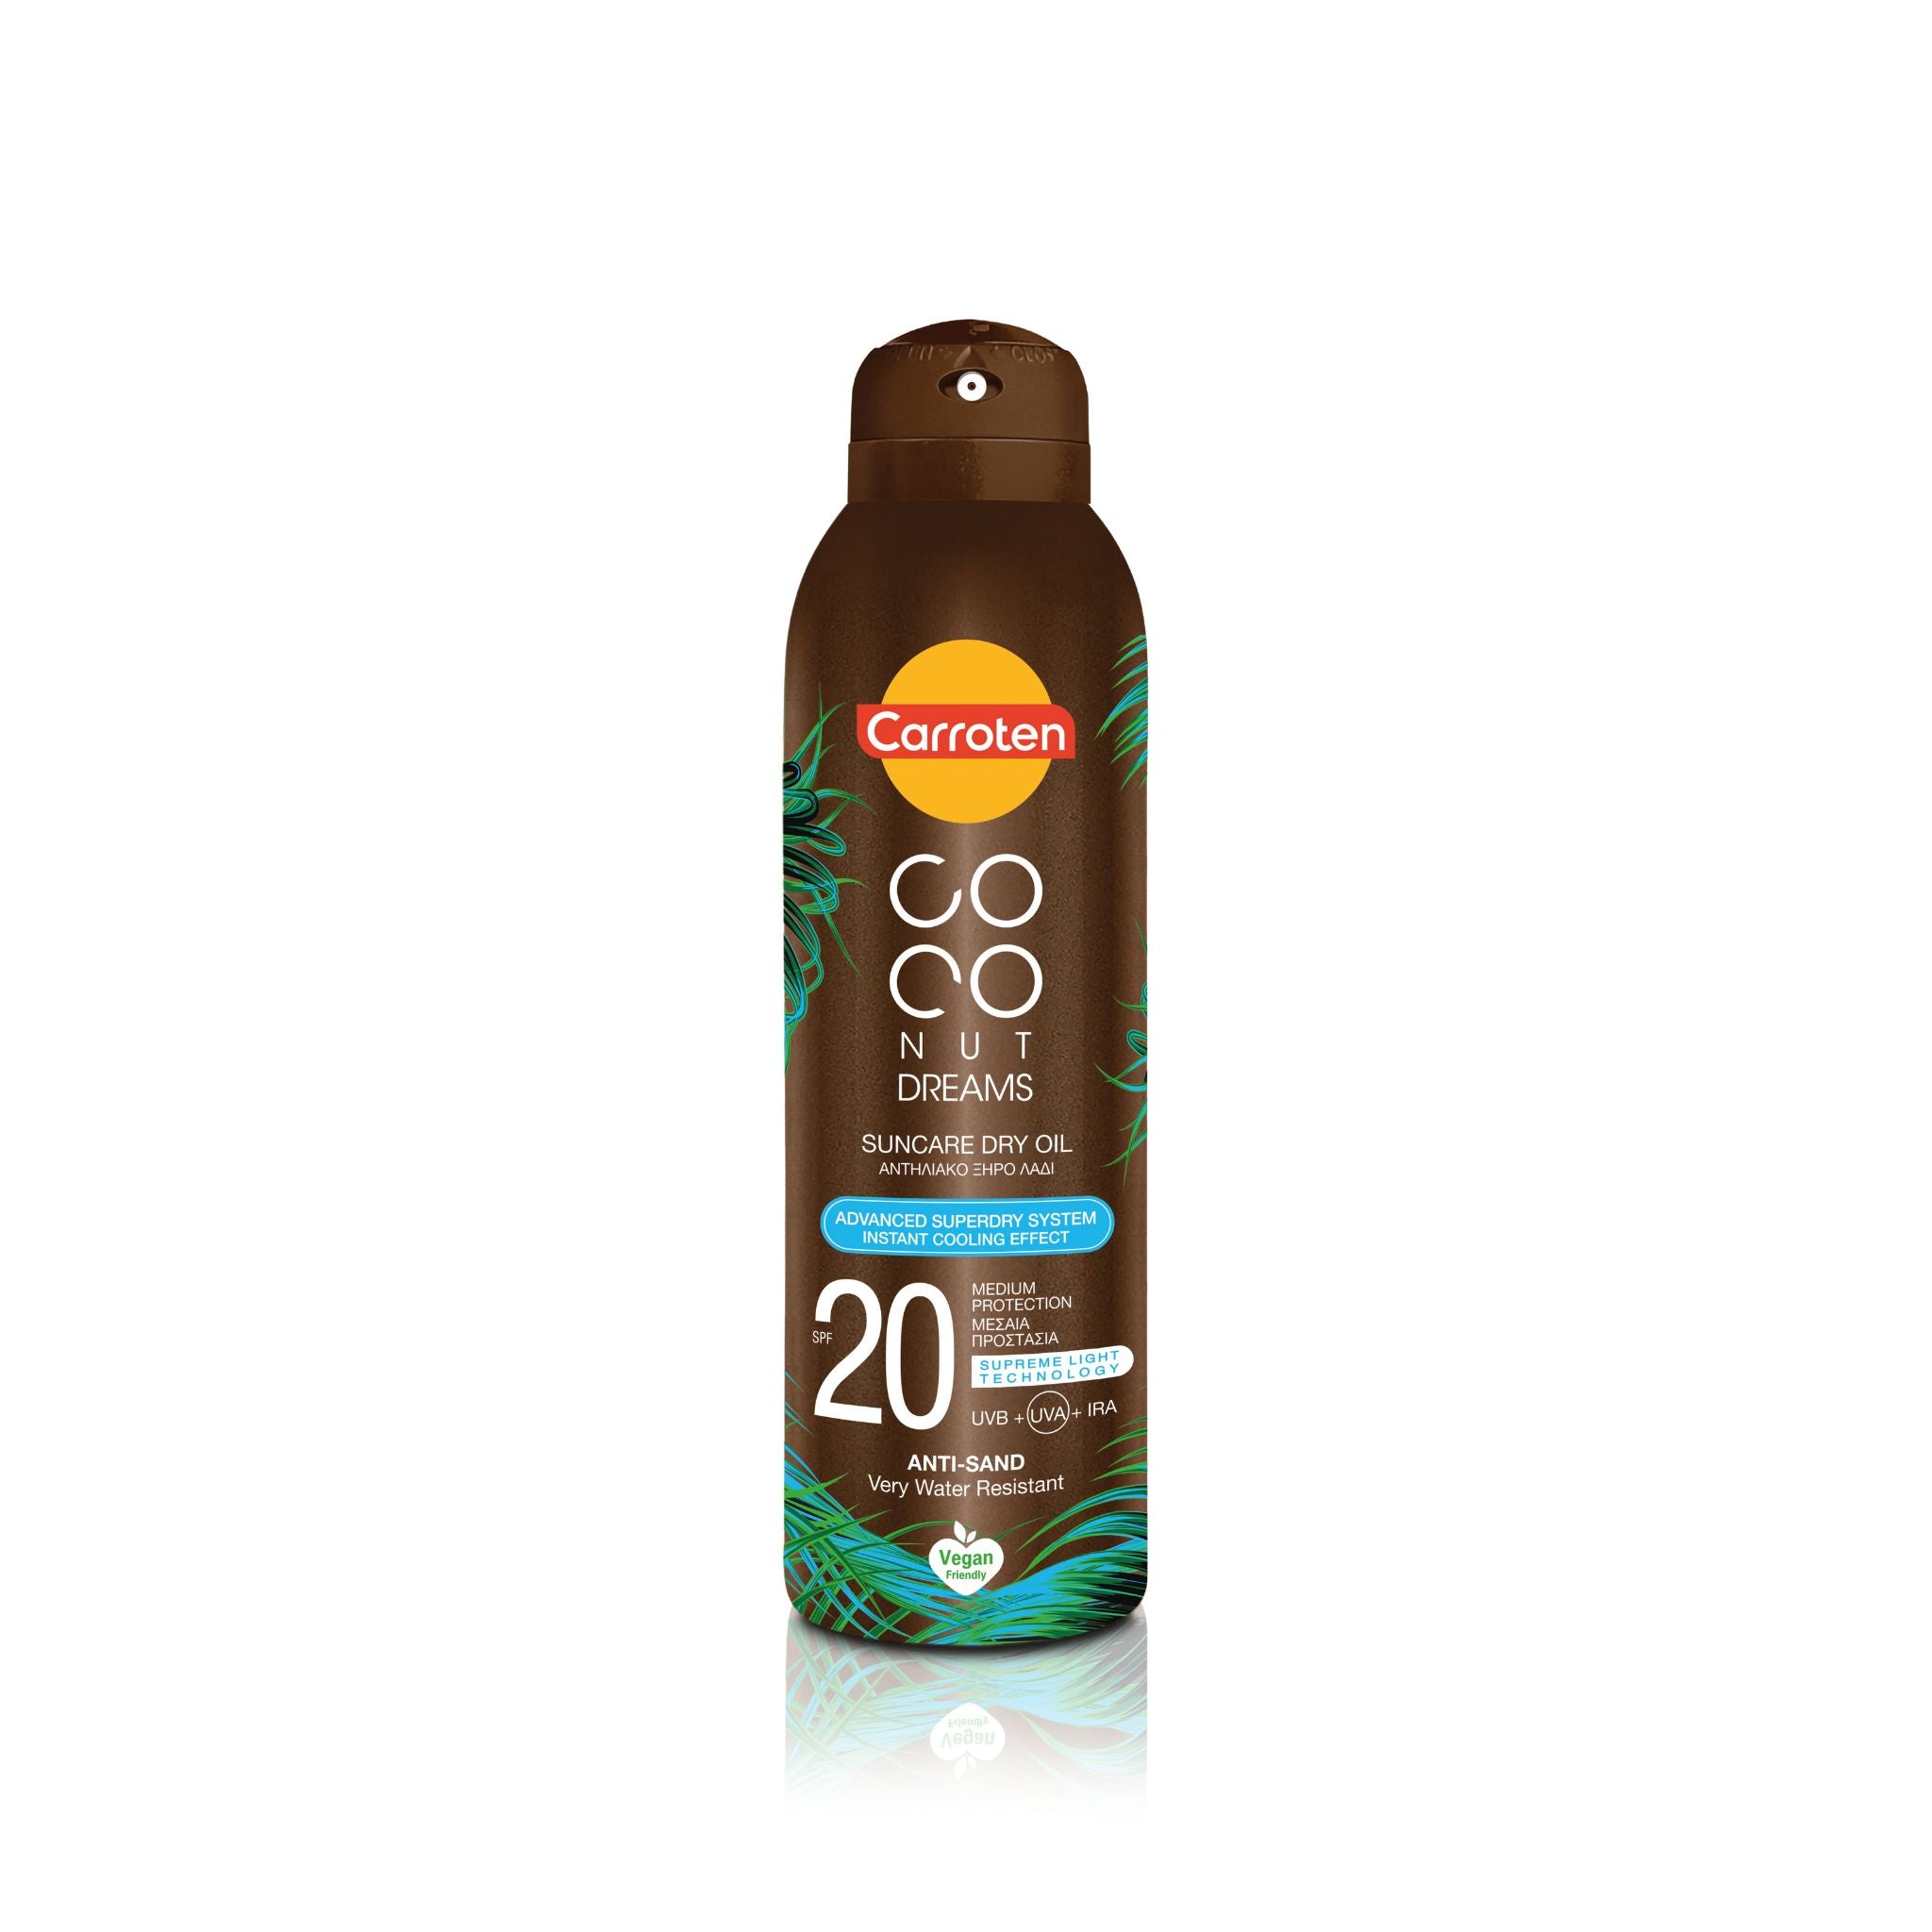 Coconut dreams suncare dry oil 20